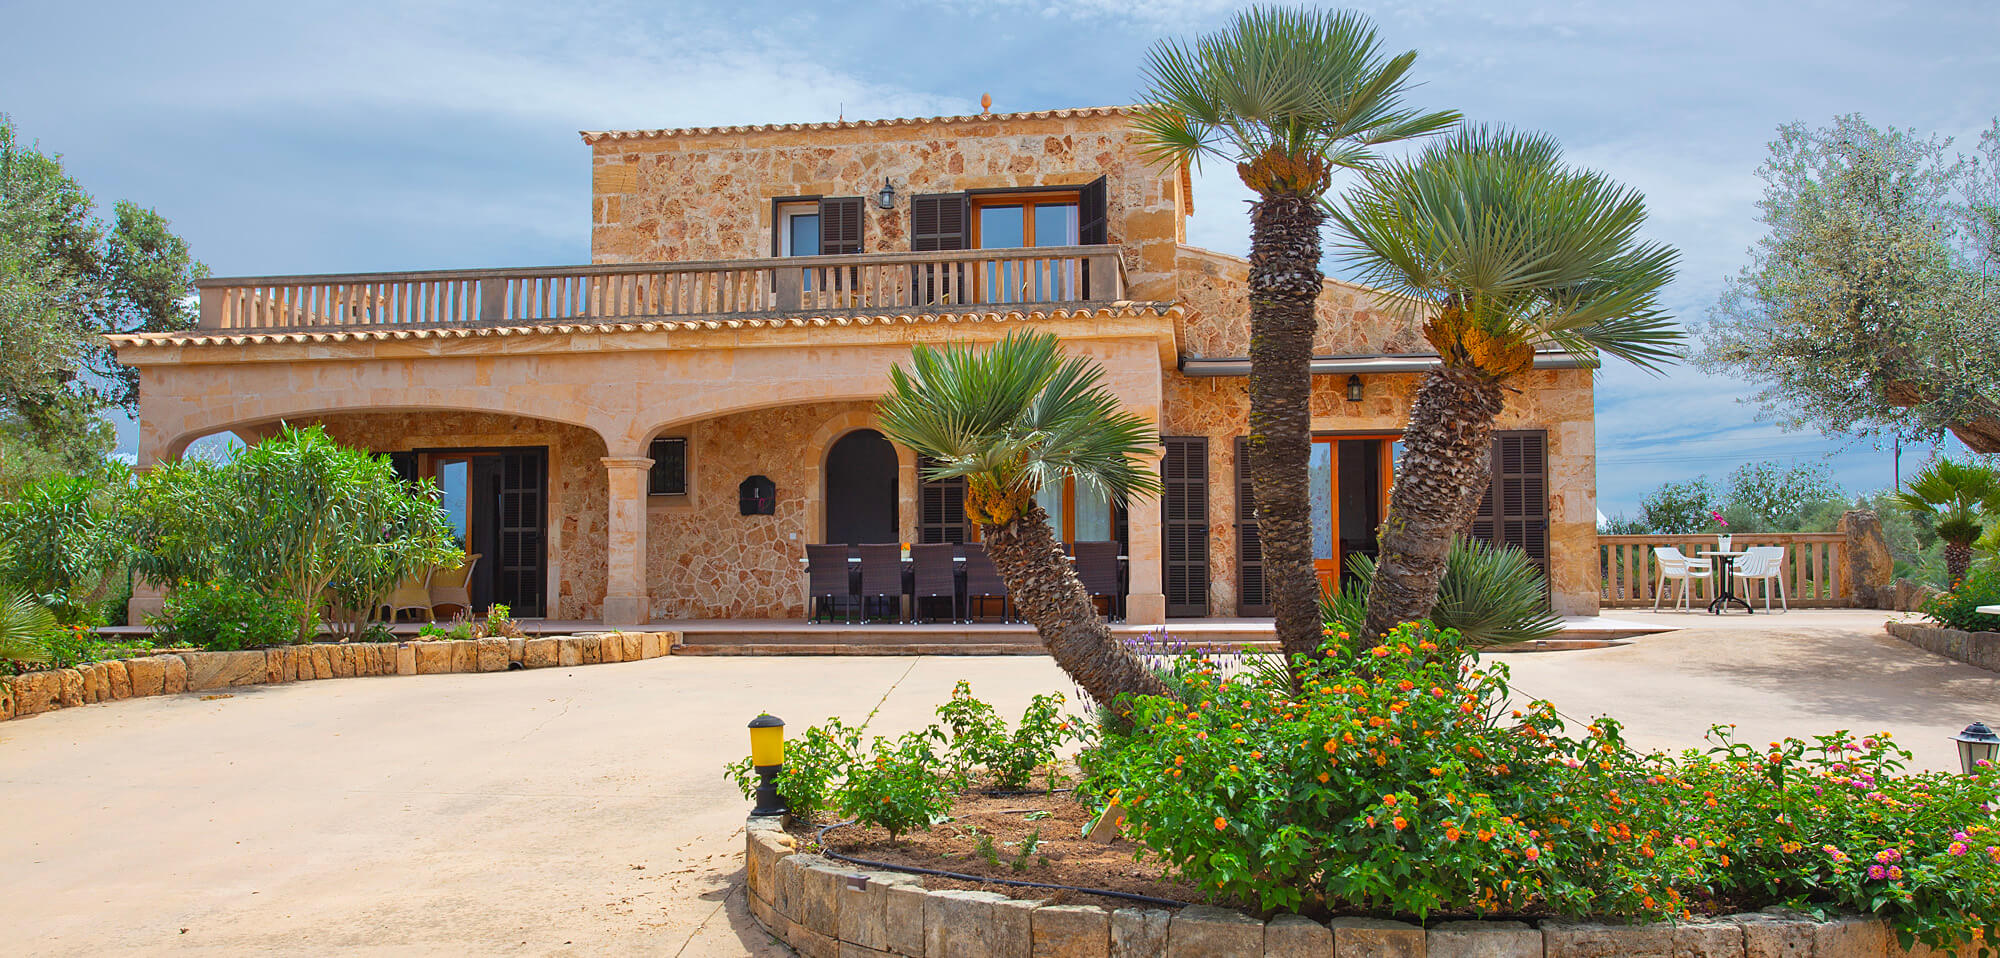 Ferienhaus Mallorca mit Pool für 12 Personen Rollstuhlgerecht.